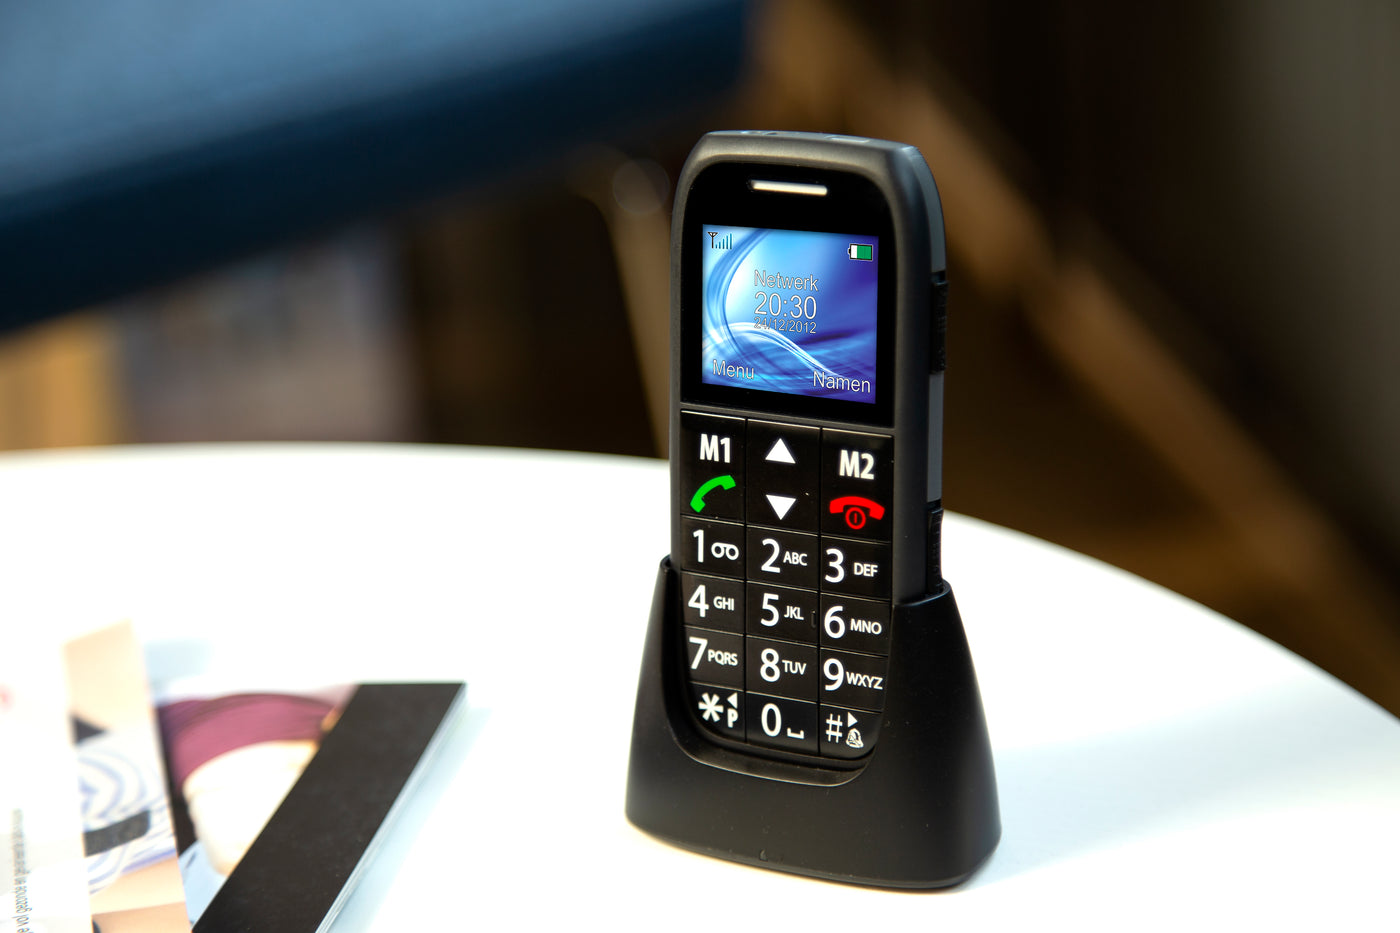 Fysic FM-7500 - Eenvoudige mobiele telefoon voor senioren met SOS paniekknop, zwart